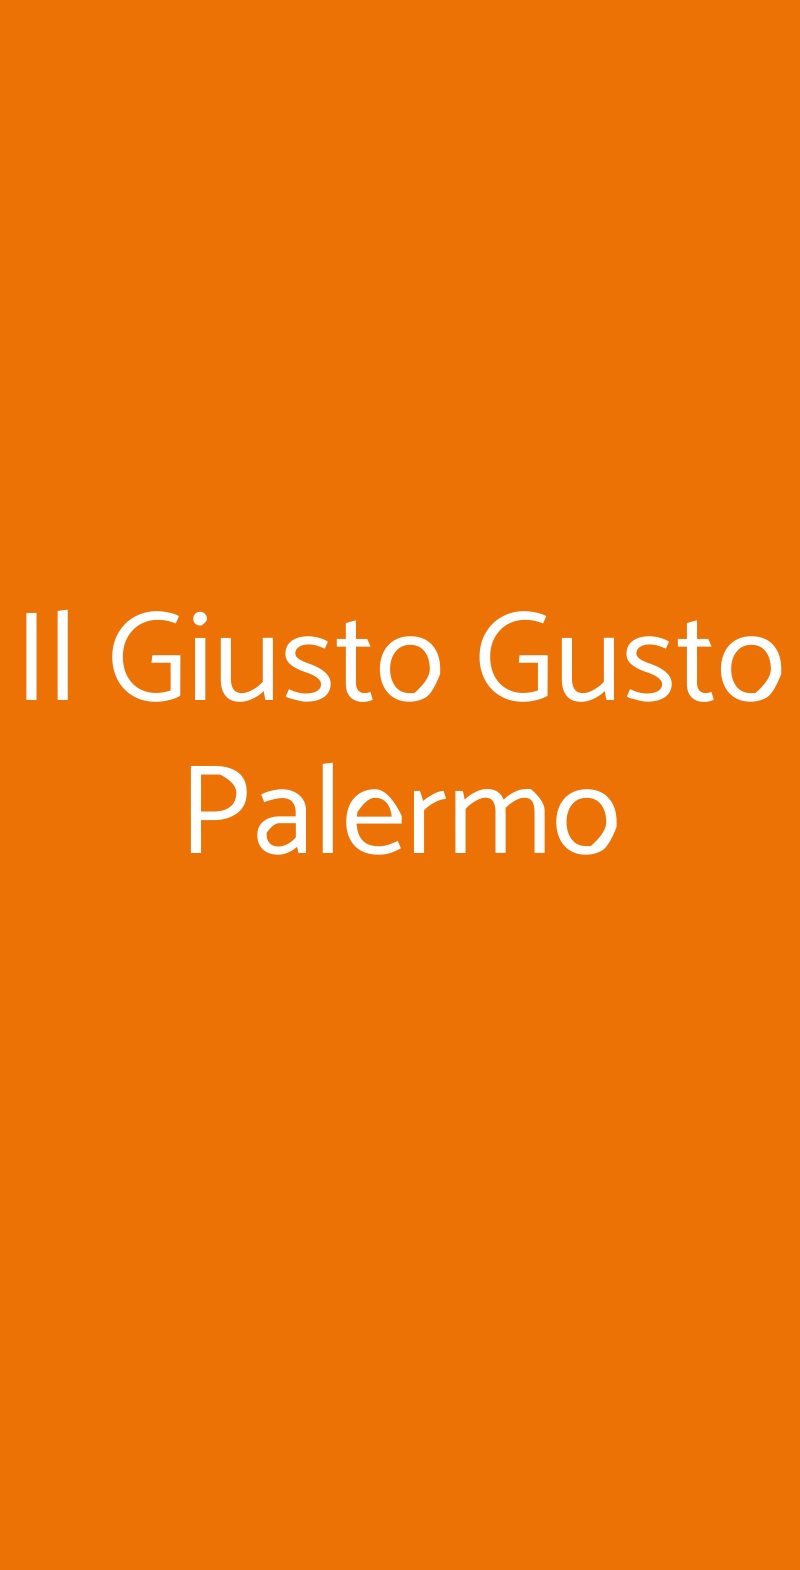 Il Giusto Gusto Palermo Palermo menù 1 pagina